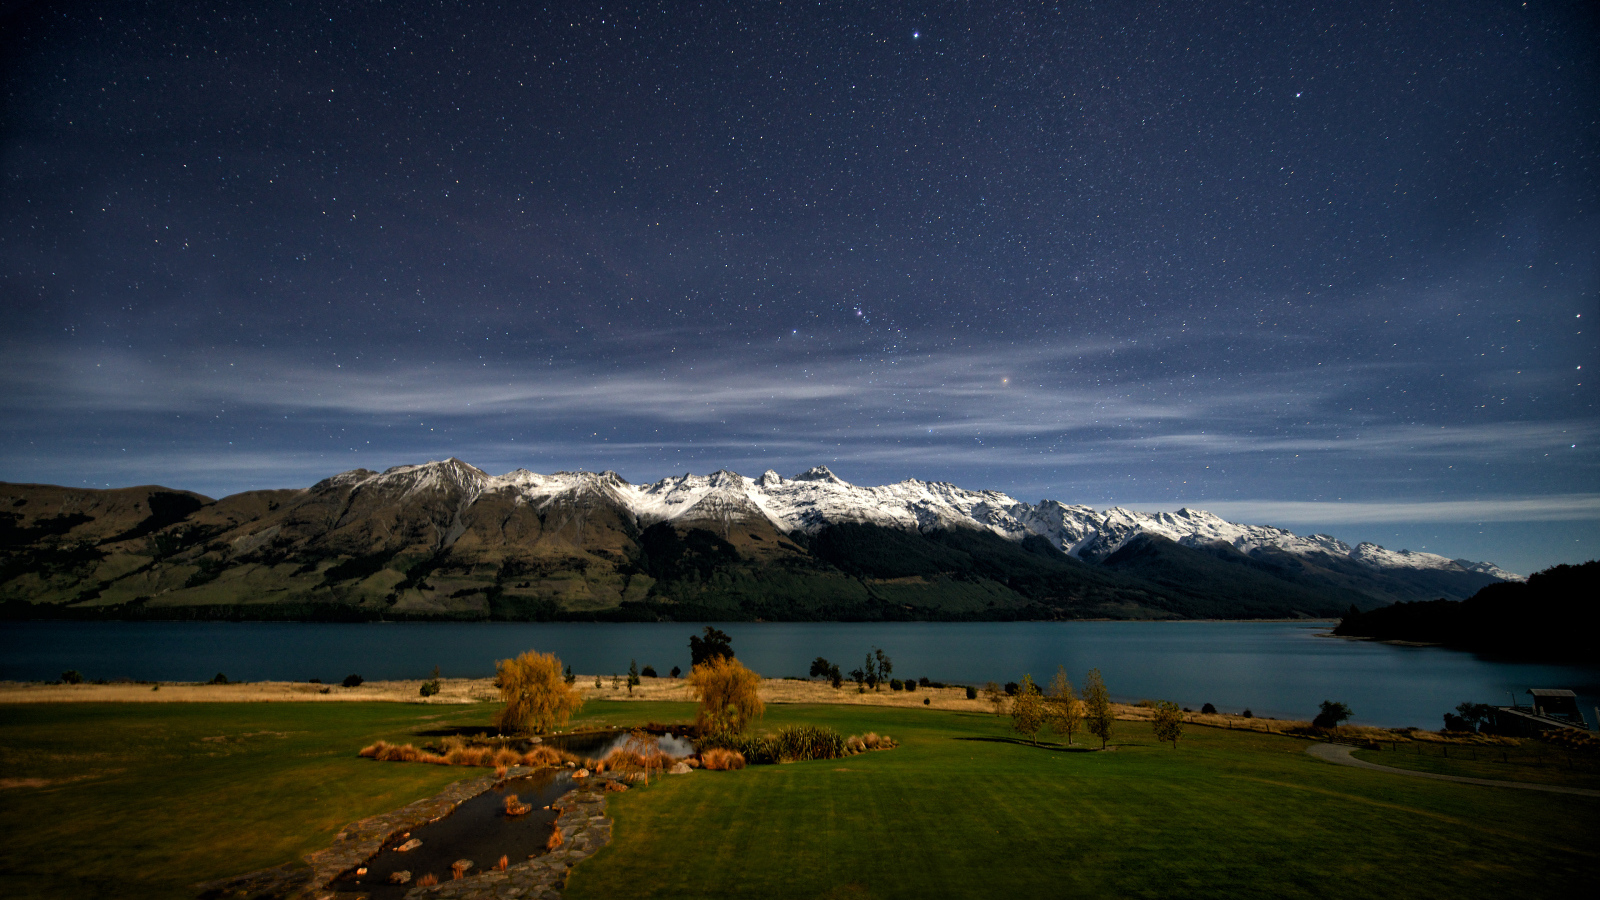 Ночная фотография озера Вакатипу, Новая Зеландия